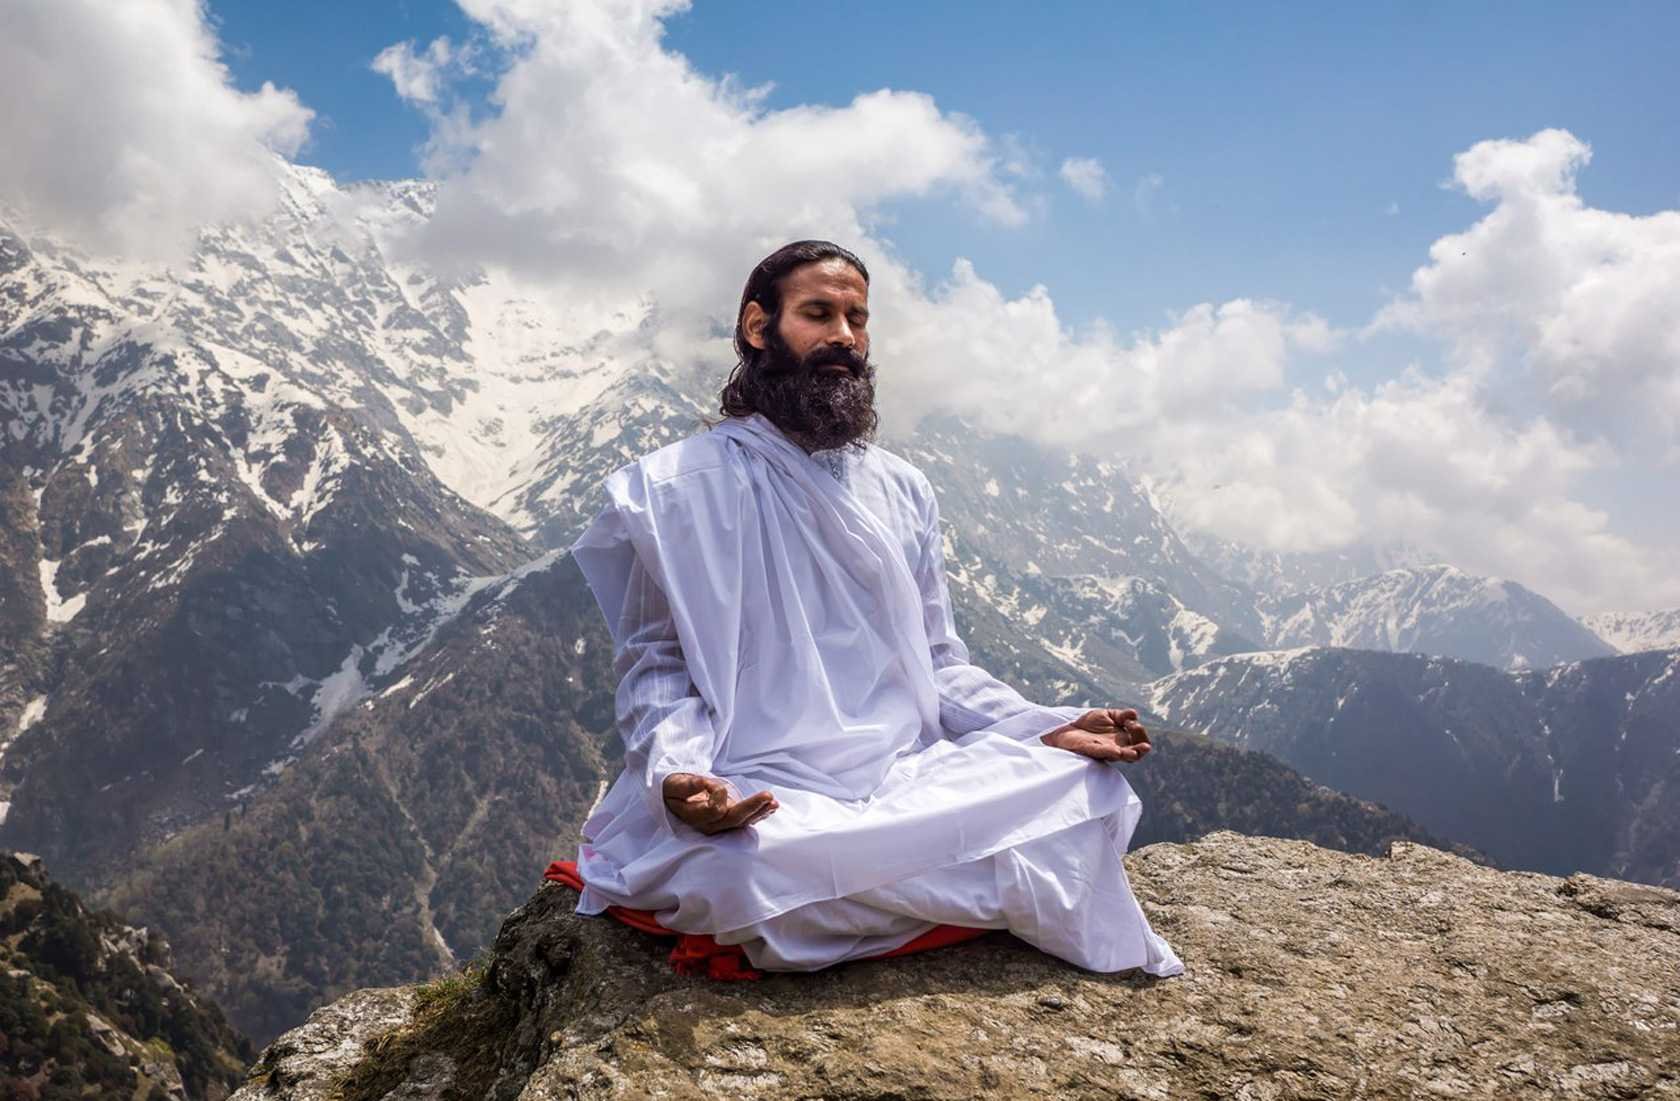 Помощник духовного лица на востоке 4. Монах йогин. Садху в Гималаях. Мудрец медитирует.